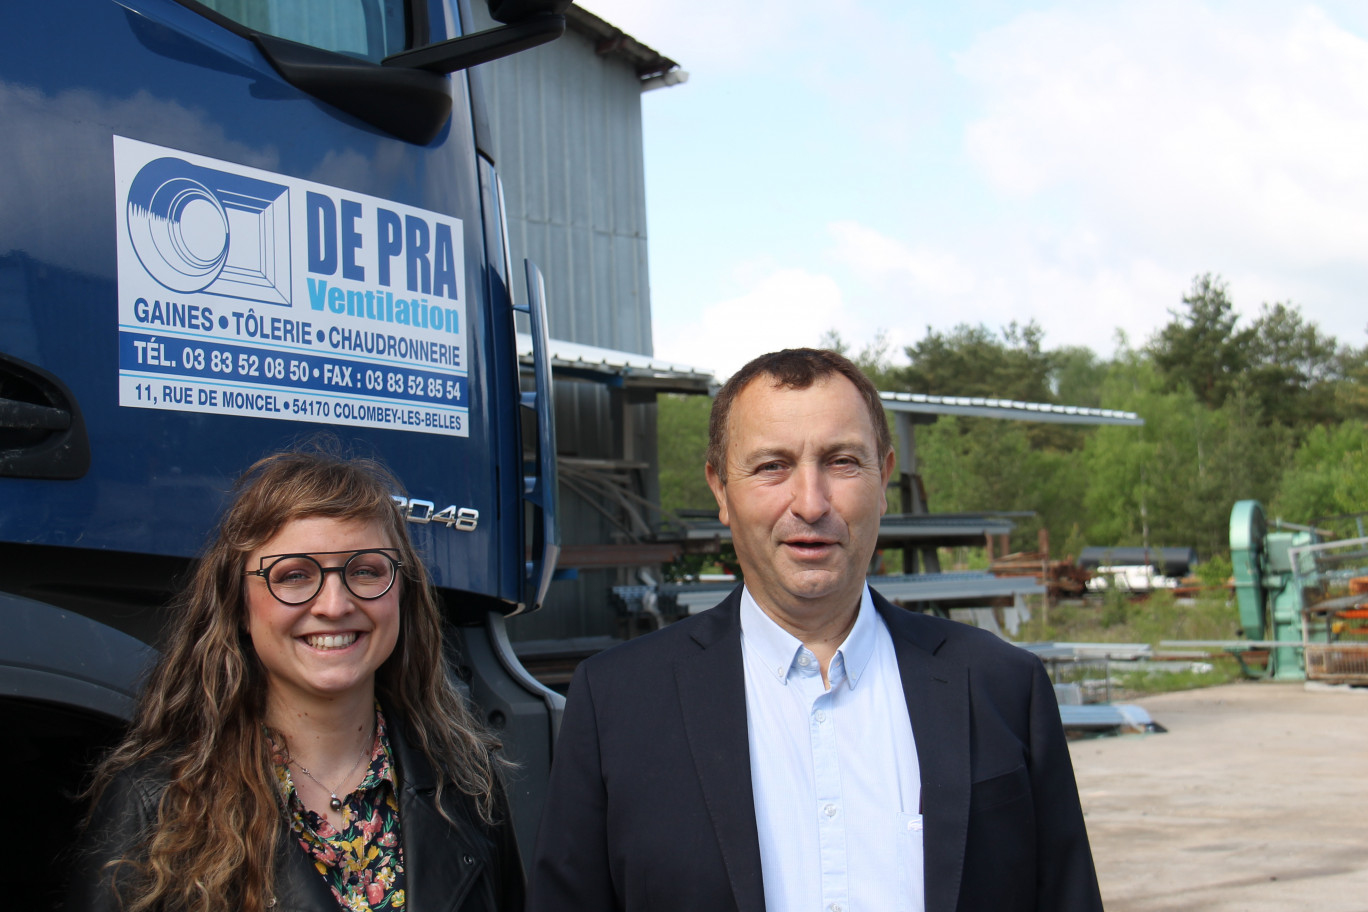 Mélany De Pra, directrice financière et administrative, et Olivier, son père, président de De Pra Ventilation, annoncent une poursuite de développement de l’entreprise familiale réfléchie et mesurée. 